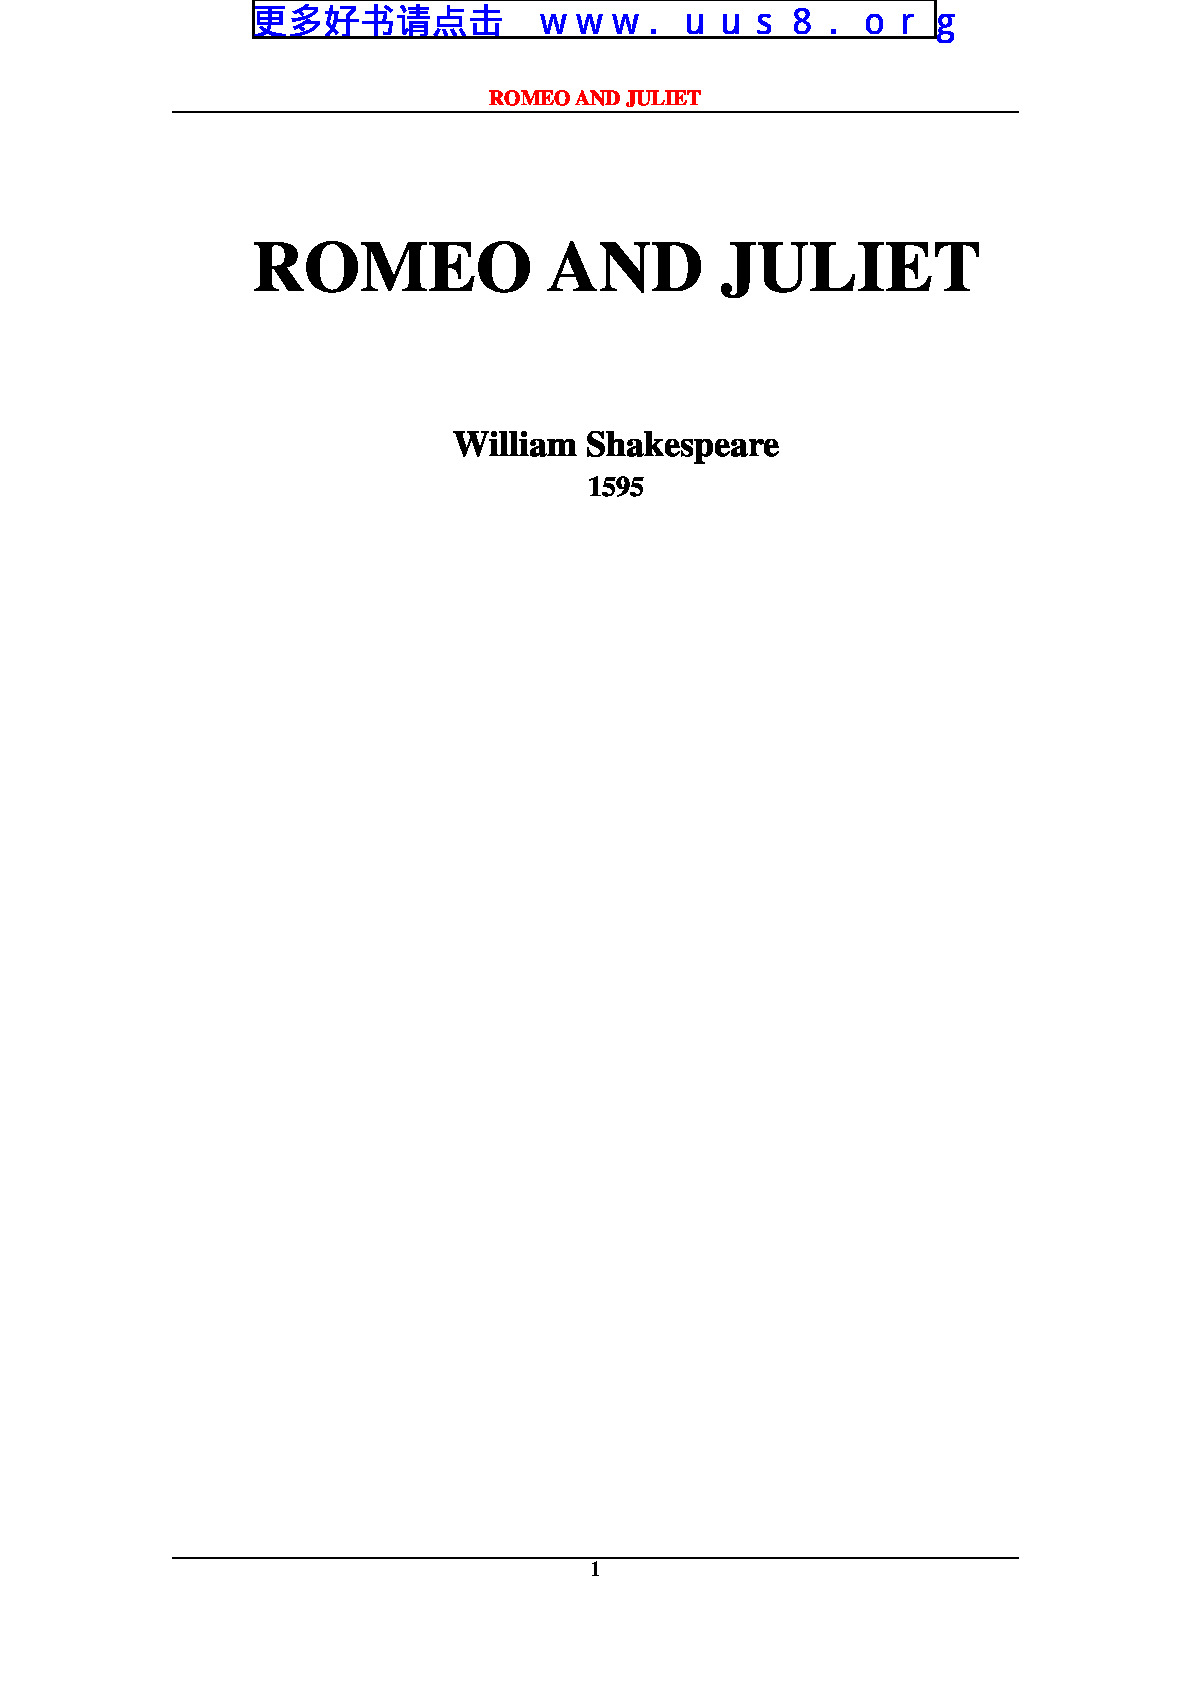 Romeo_and_Juliet(罗蜜欧和朱丽叶)